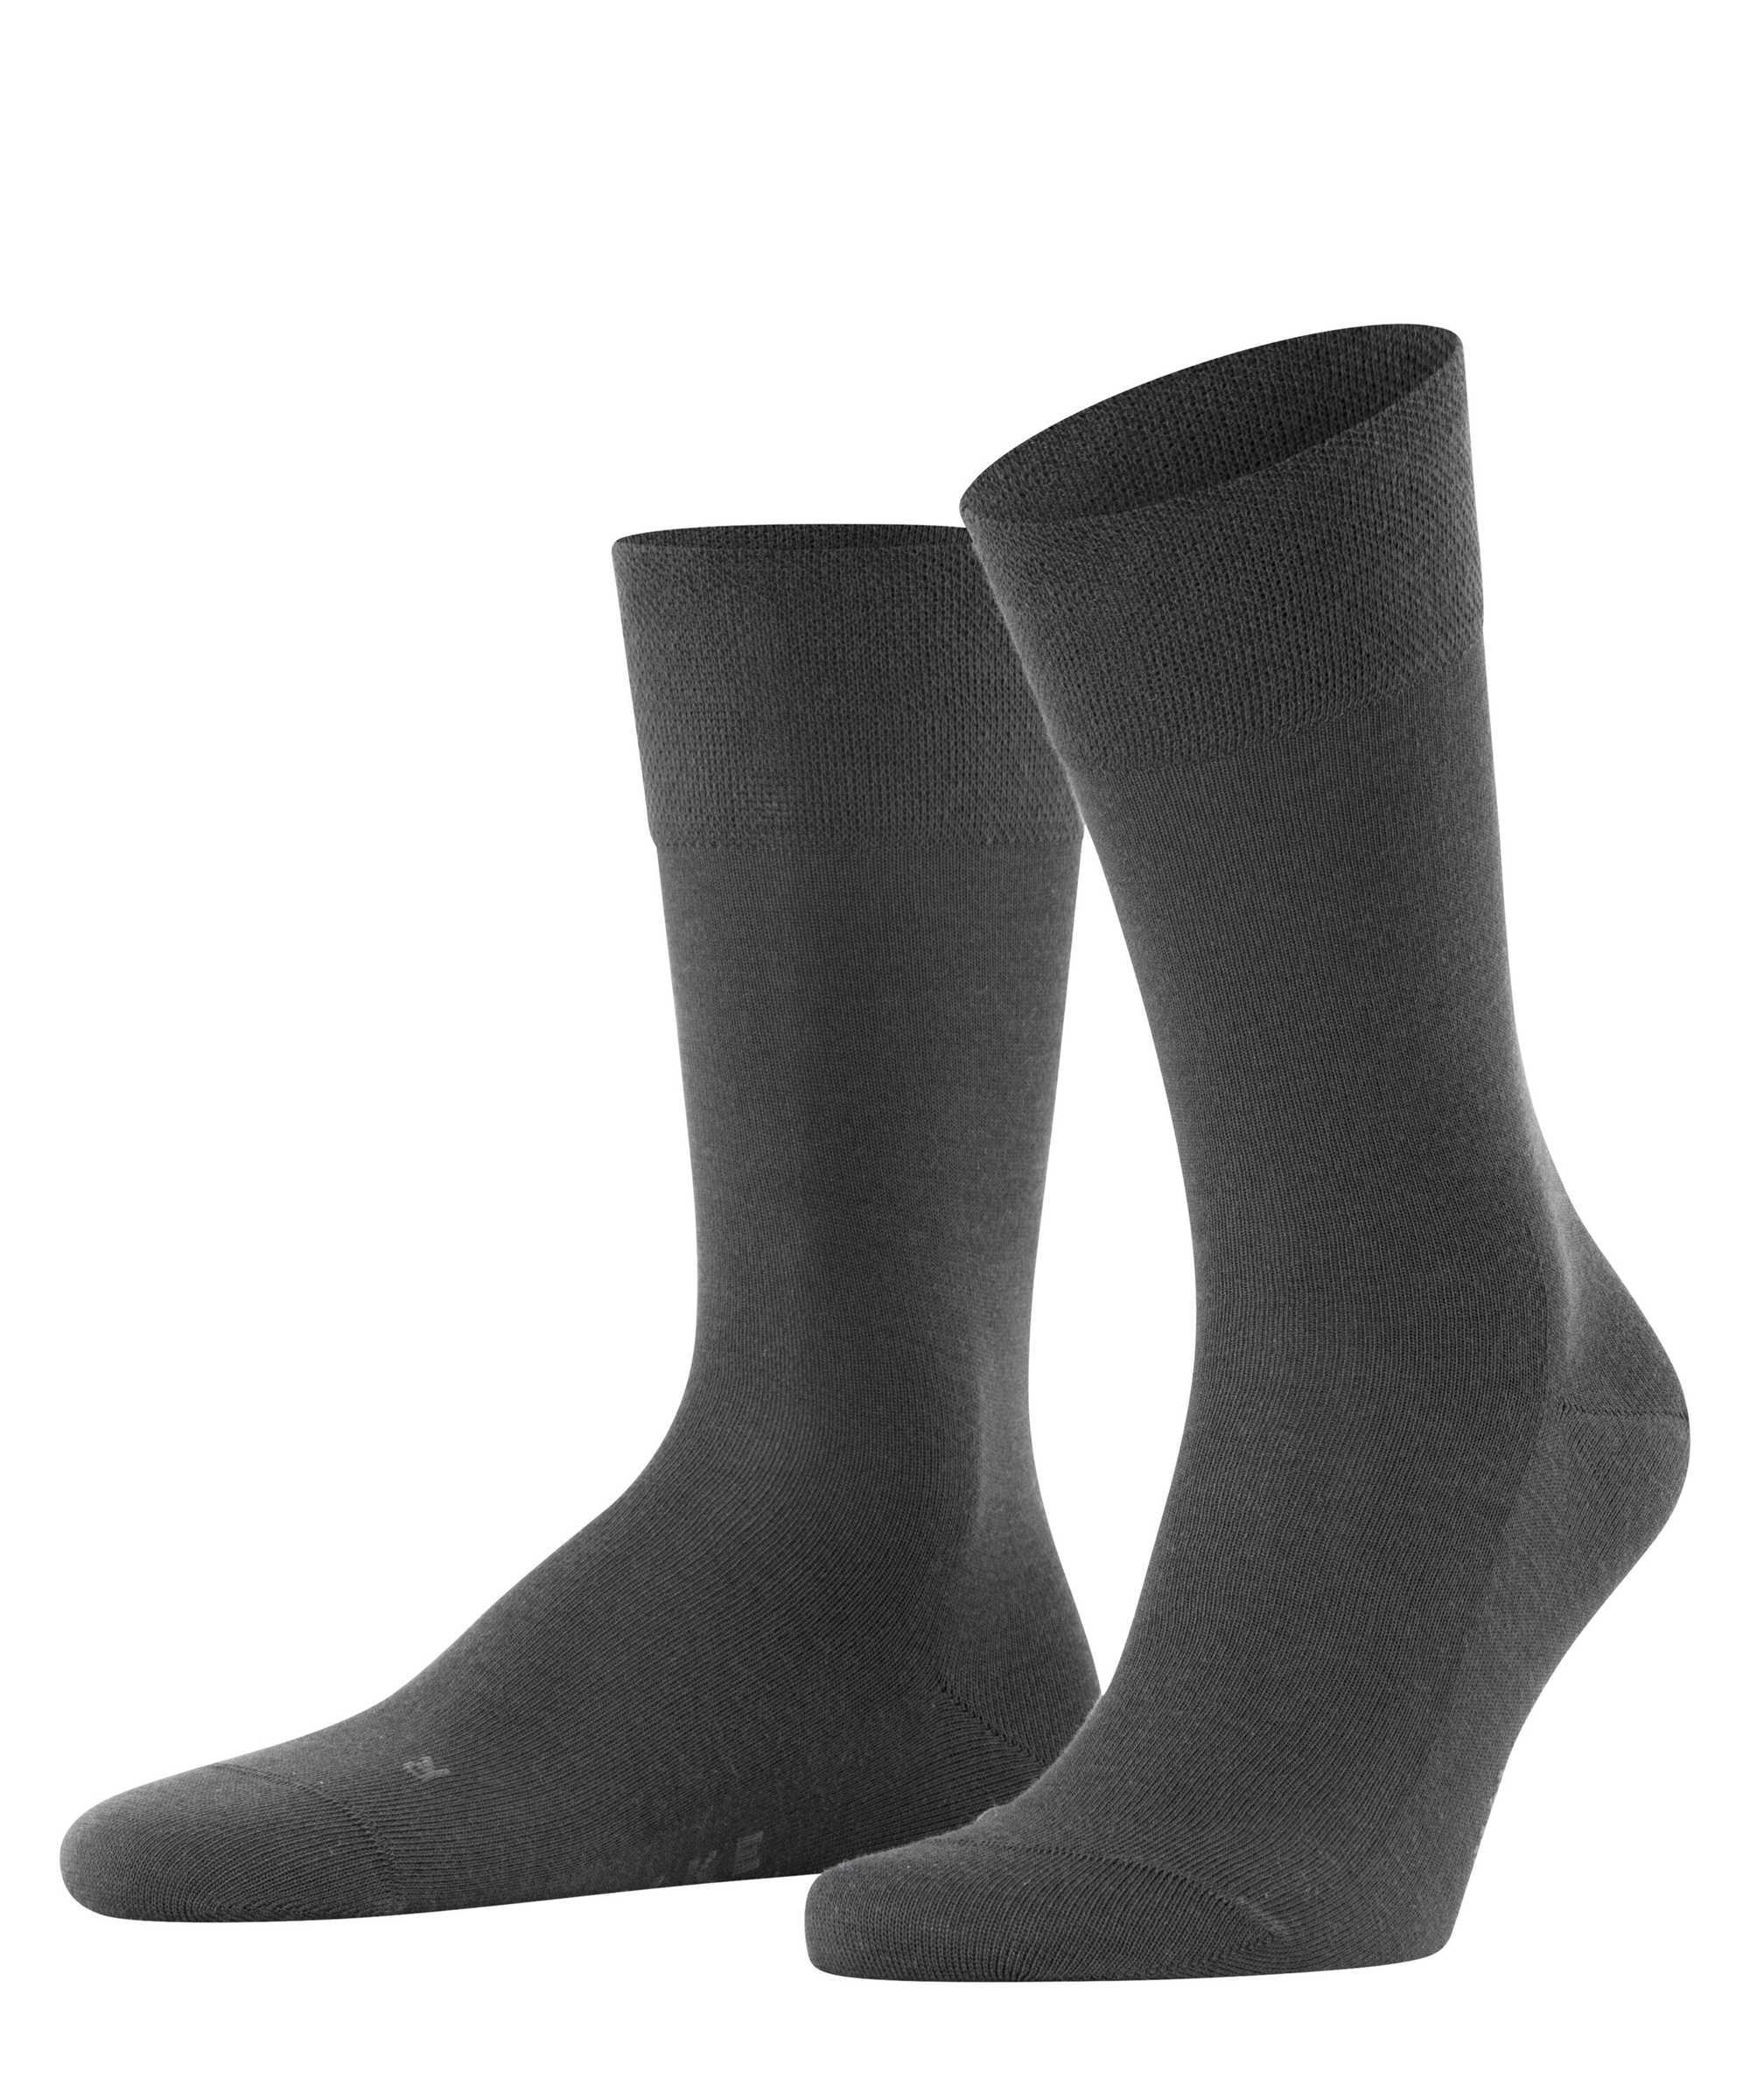 Falke Herren Socken Hersteller: Falke Bestellnummer:4031309875613